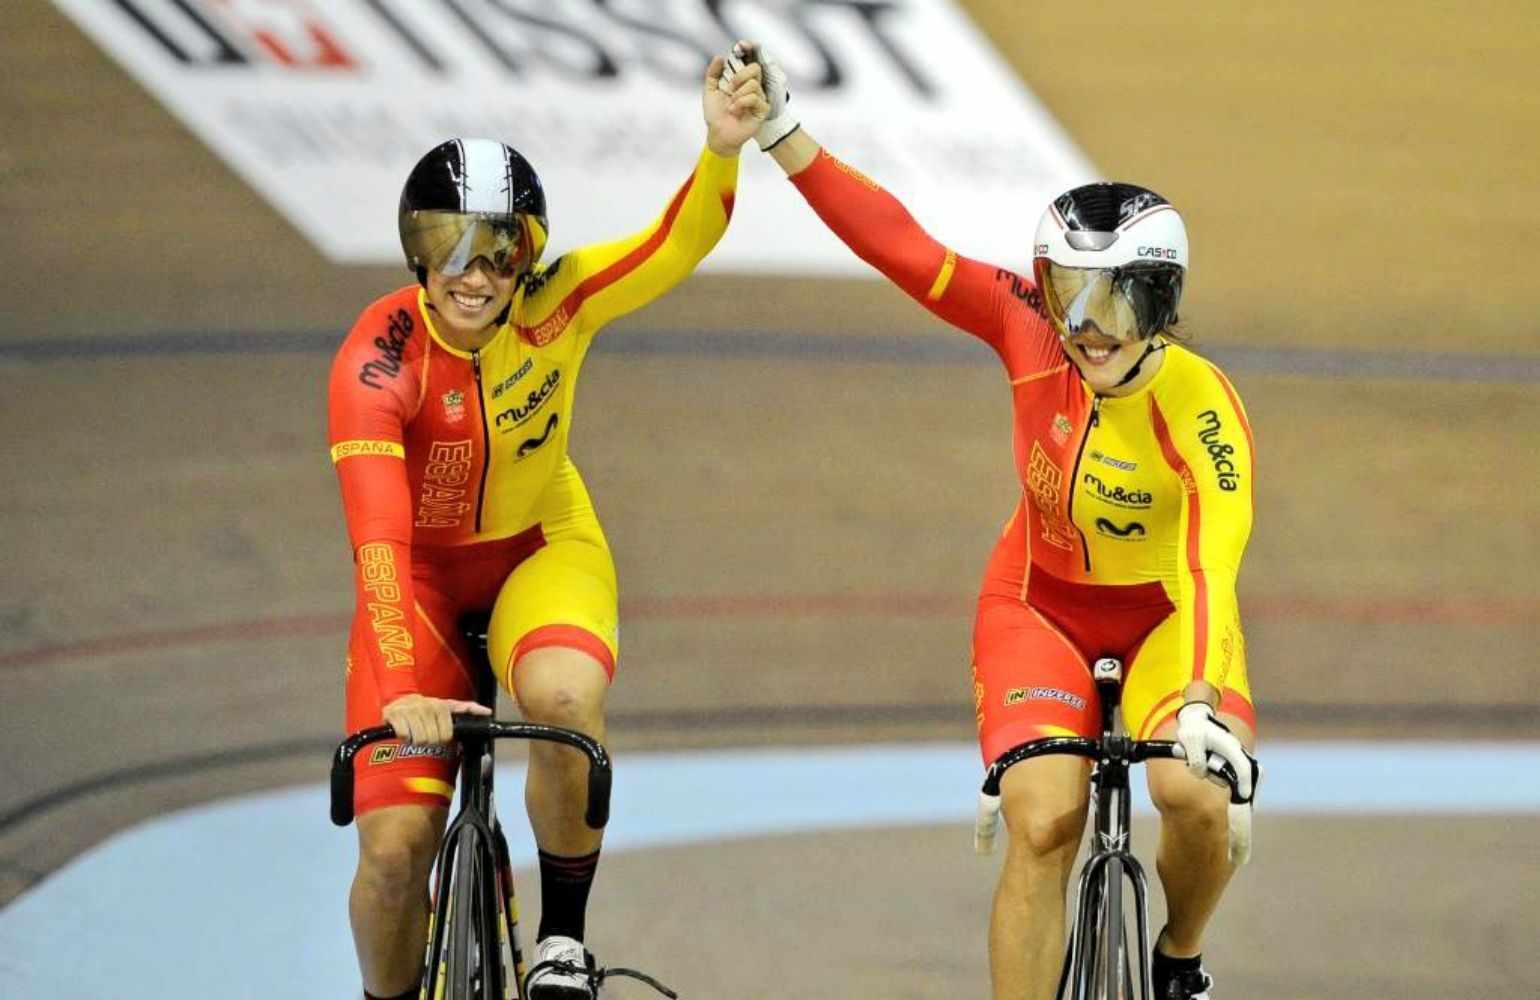 Helena Casas i Tania Calvo guanyen l'or en velocitat per equips a la Copa del Món